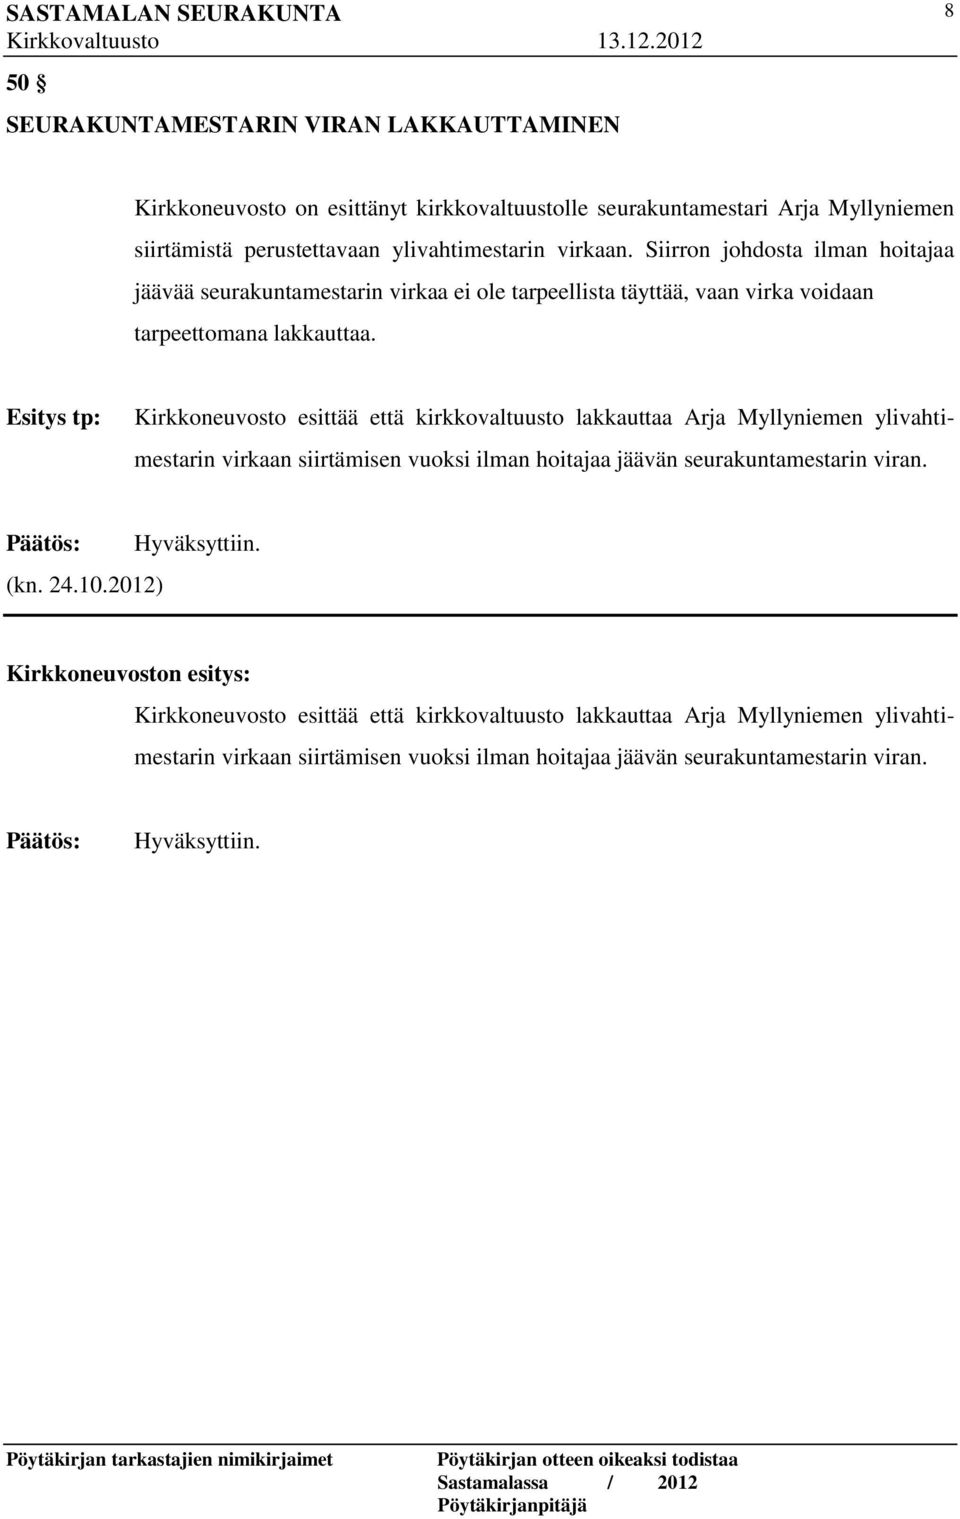 Esitys tp: Kirkkoneuvosto esittää että kirkkovaltuusto lakkauttaa Arja Myllyniemen ylivahtimestarin virkaan siirtämisen vuoksi ilman hoitajaa jäävän seurakuntamestarin